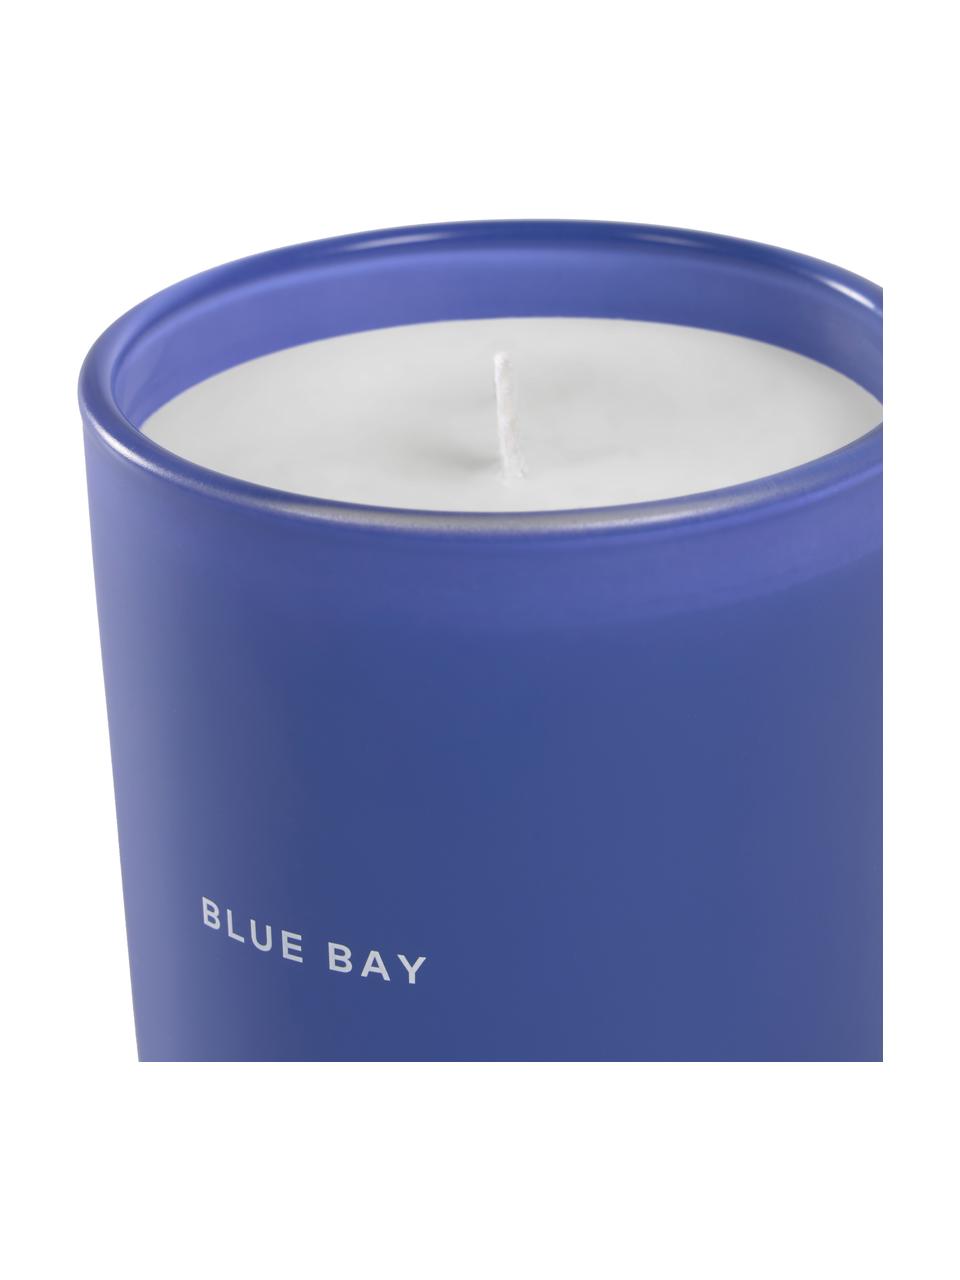 Duftkerze Blue Bay (Flieder, Vanille), Behälter: Glas, Dunkelblau, Weiss, Ø 9 x H 10 cm